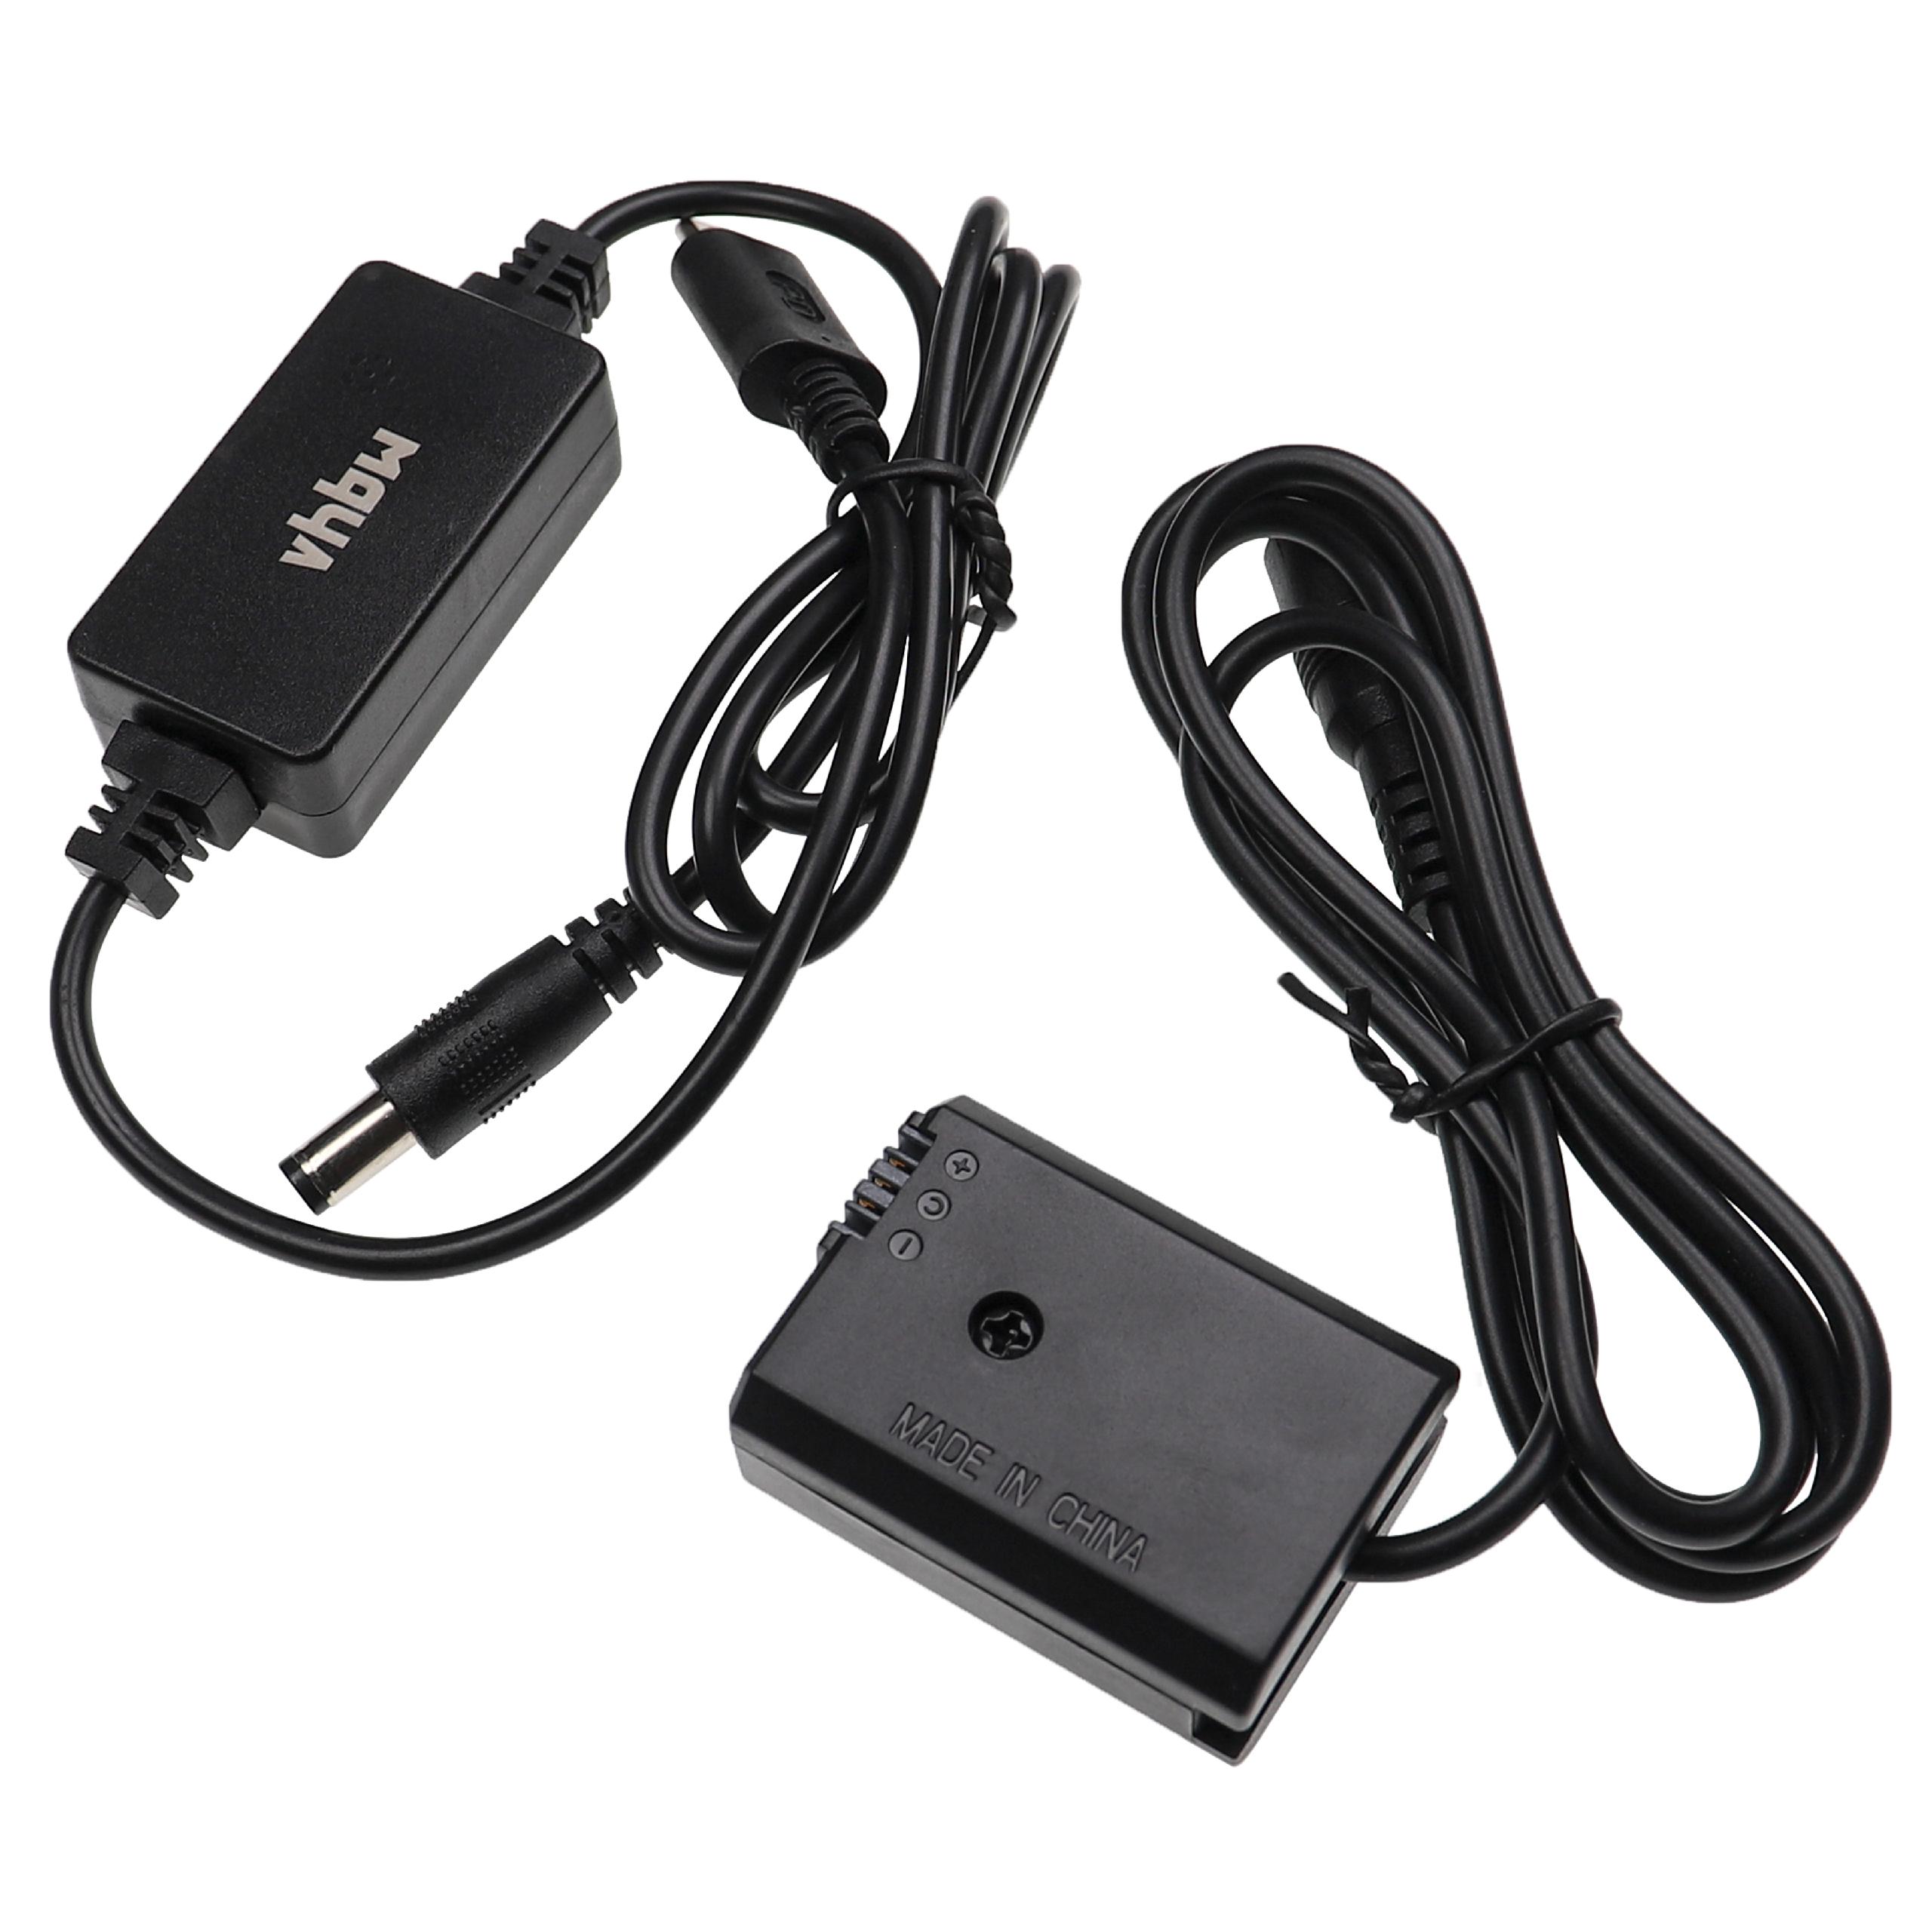 Zasilacz USB do aparatu zam. AC-PW20 + adapter zam. Sony NP-FW50 - 2 m, 8,4 V 3,0 A